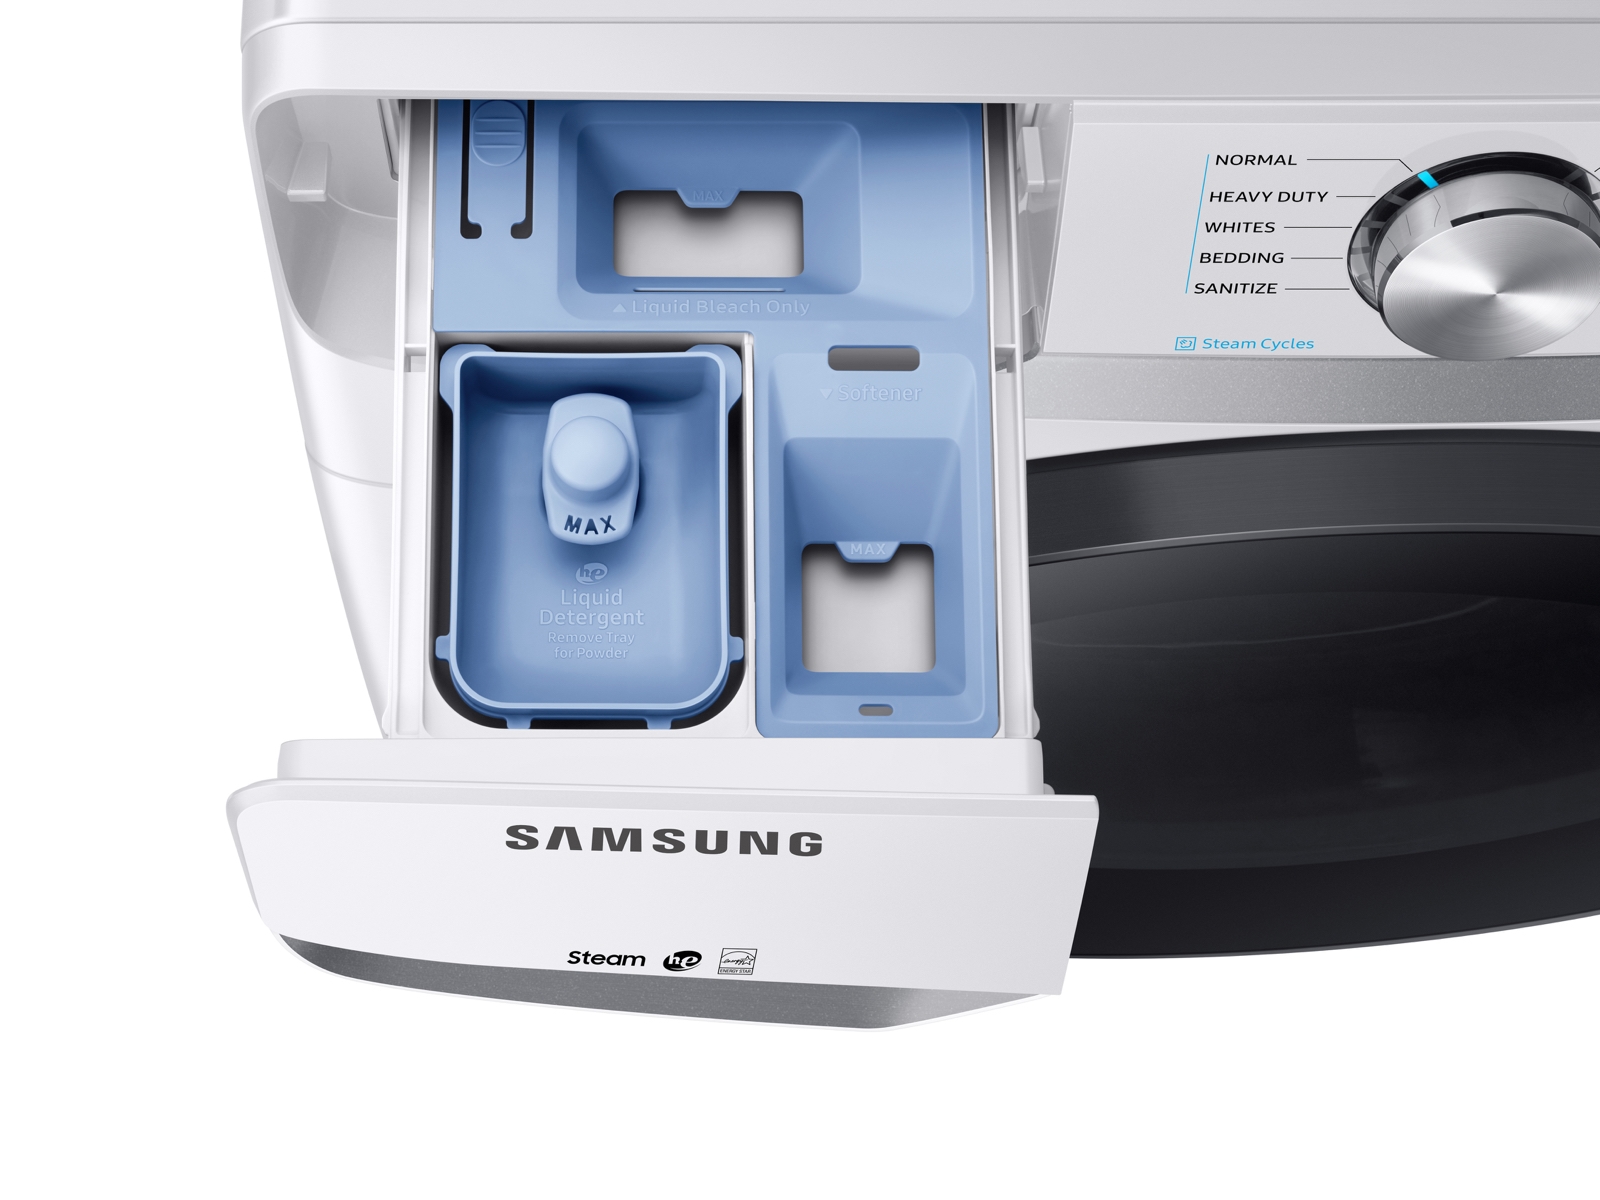 Wash whites in your Samsung washing machine